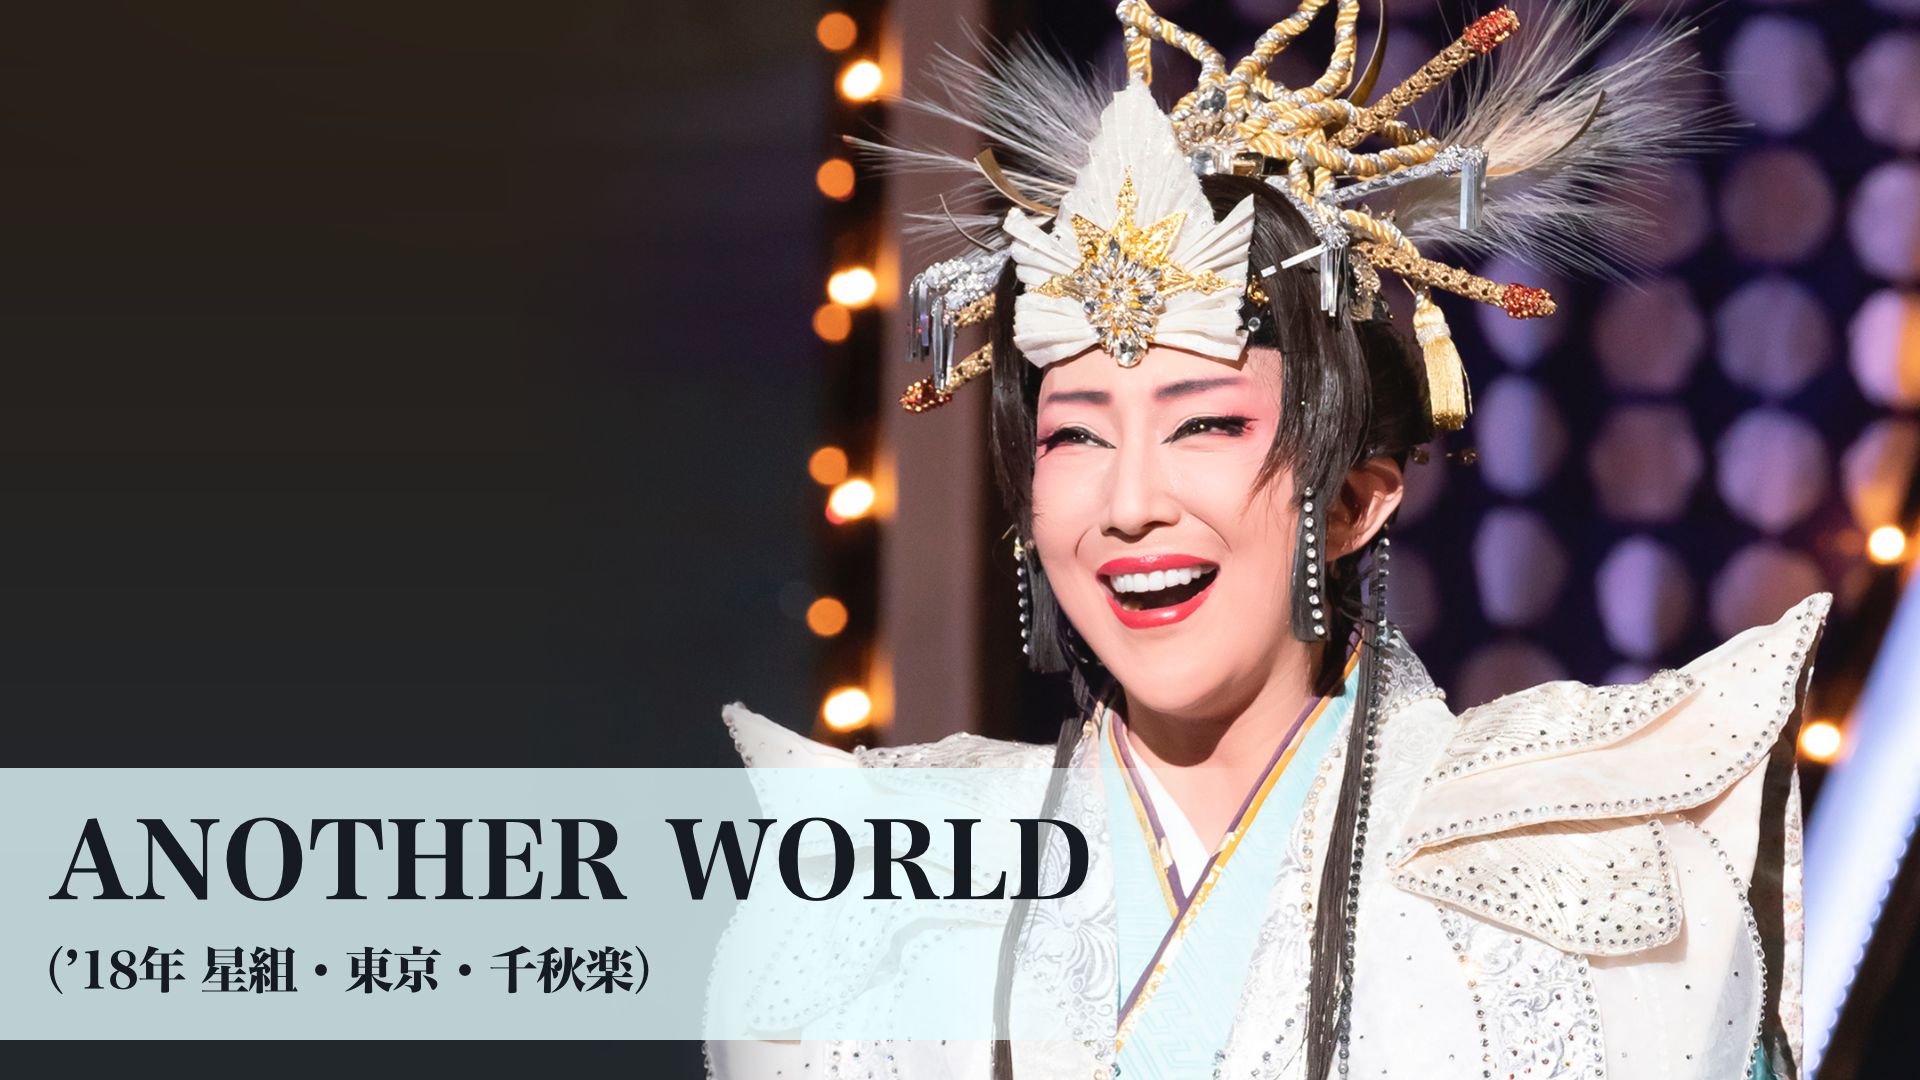 宝塚歌劇 ANOTHER WORLD('18年星組・東京・千秋楽)